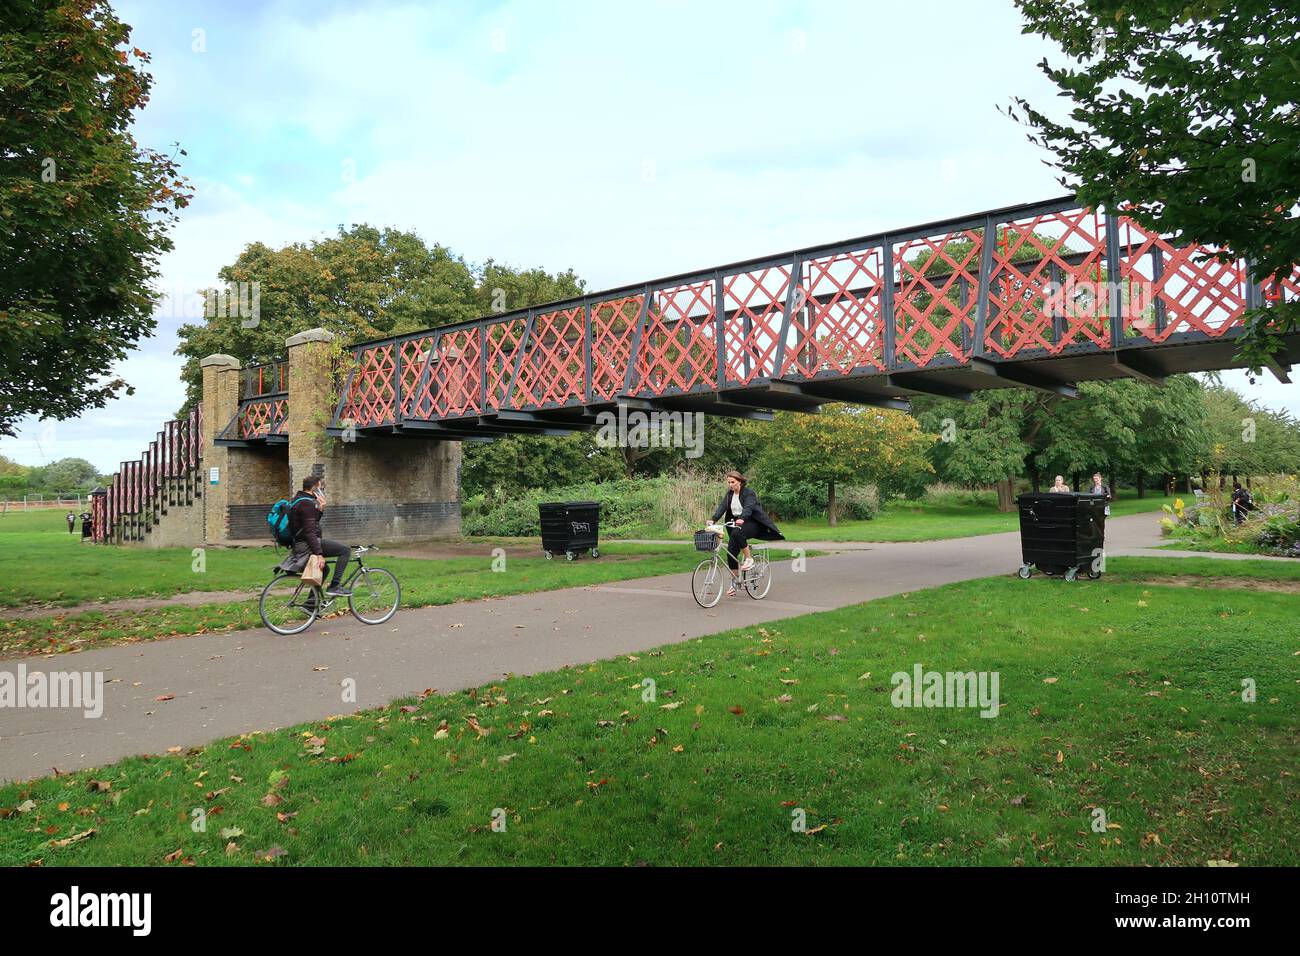 Burgess Park, Peckham, London, Großbritannien. Radfahrer und Fußgänger auf einem Weg entlang der alten Surrey Canal Route. Zeigt die originale viktorianische Kanalbrücke. Stockfoto